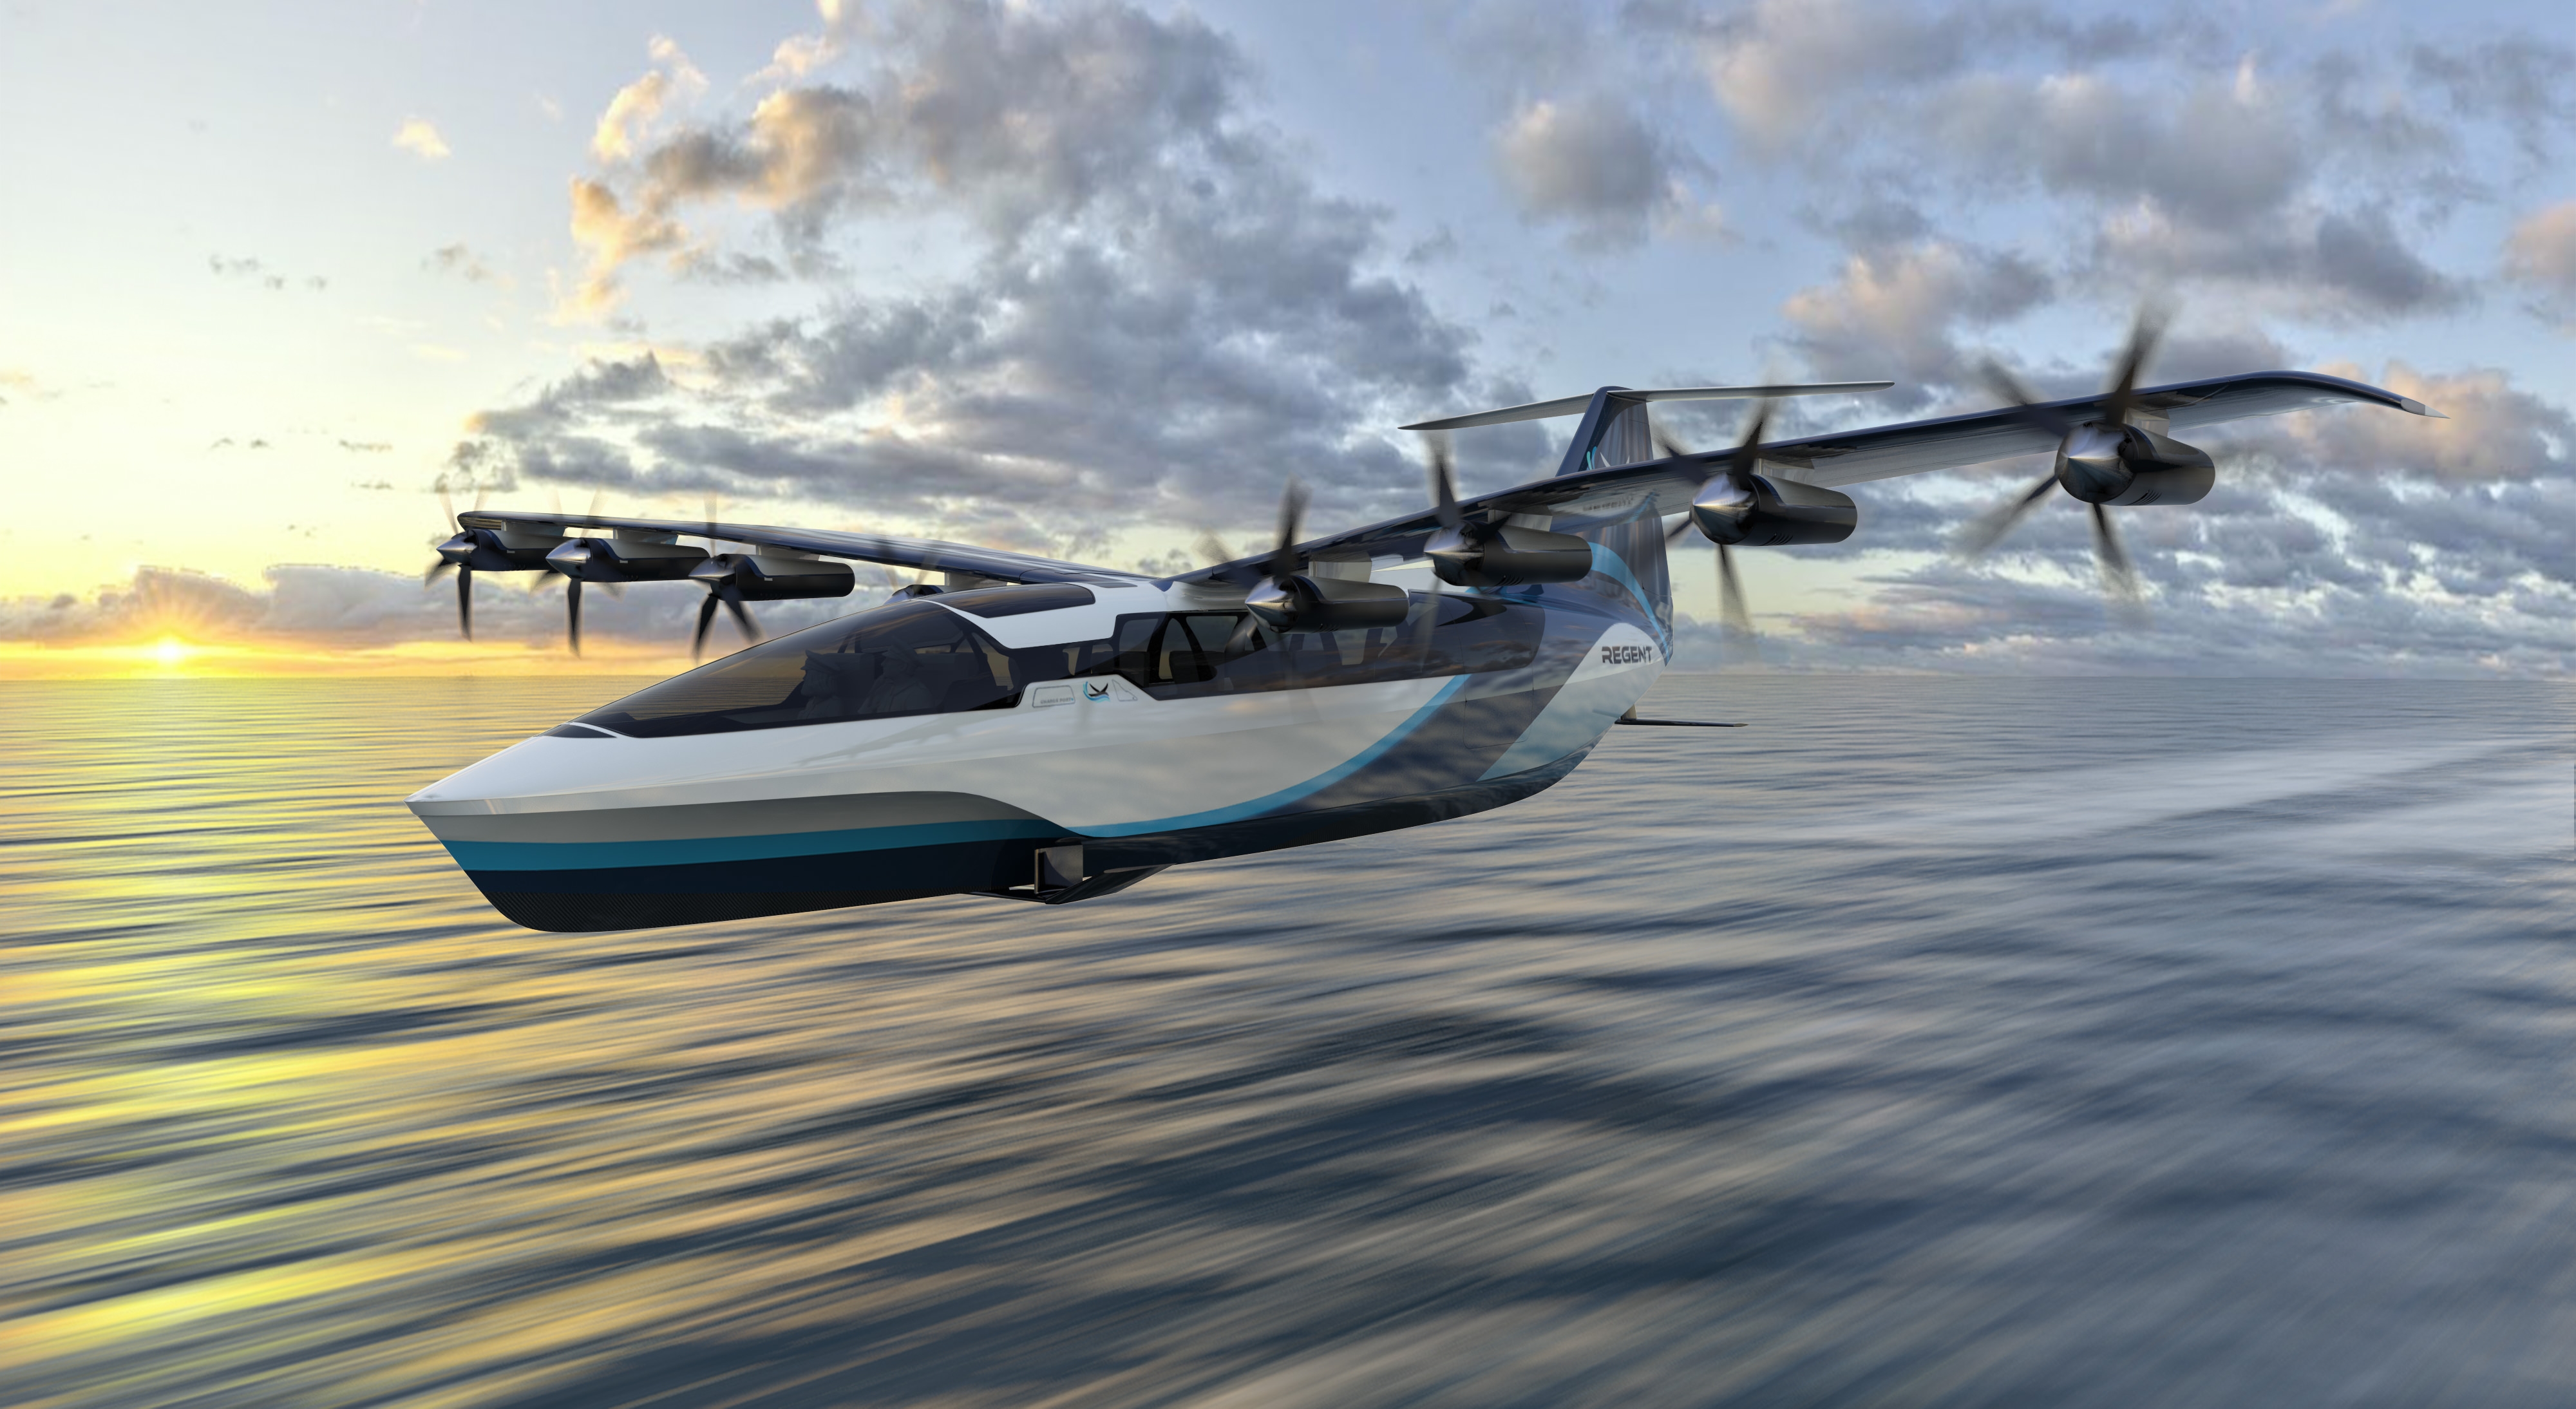 ヤマトホールディングス、水面上を飛行する電動「シーグライダー」を開発する米国スタートアップへ出資─飛行中CO2排出ゼロ